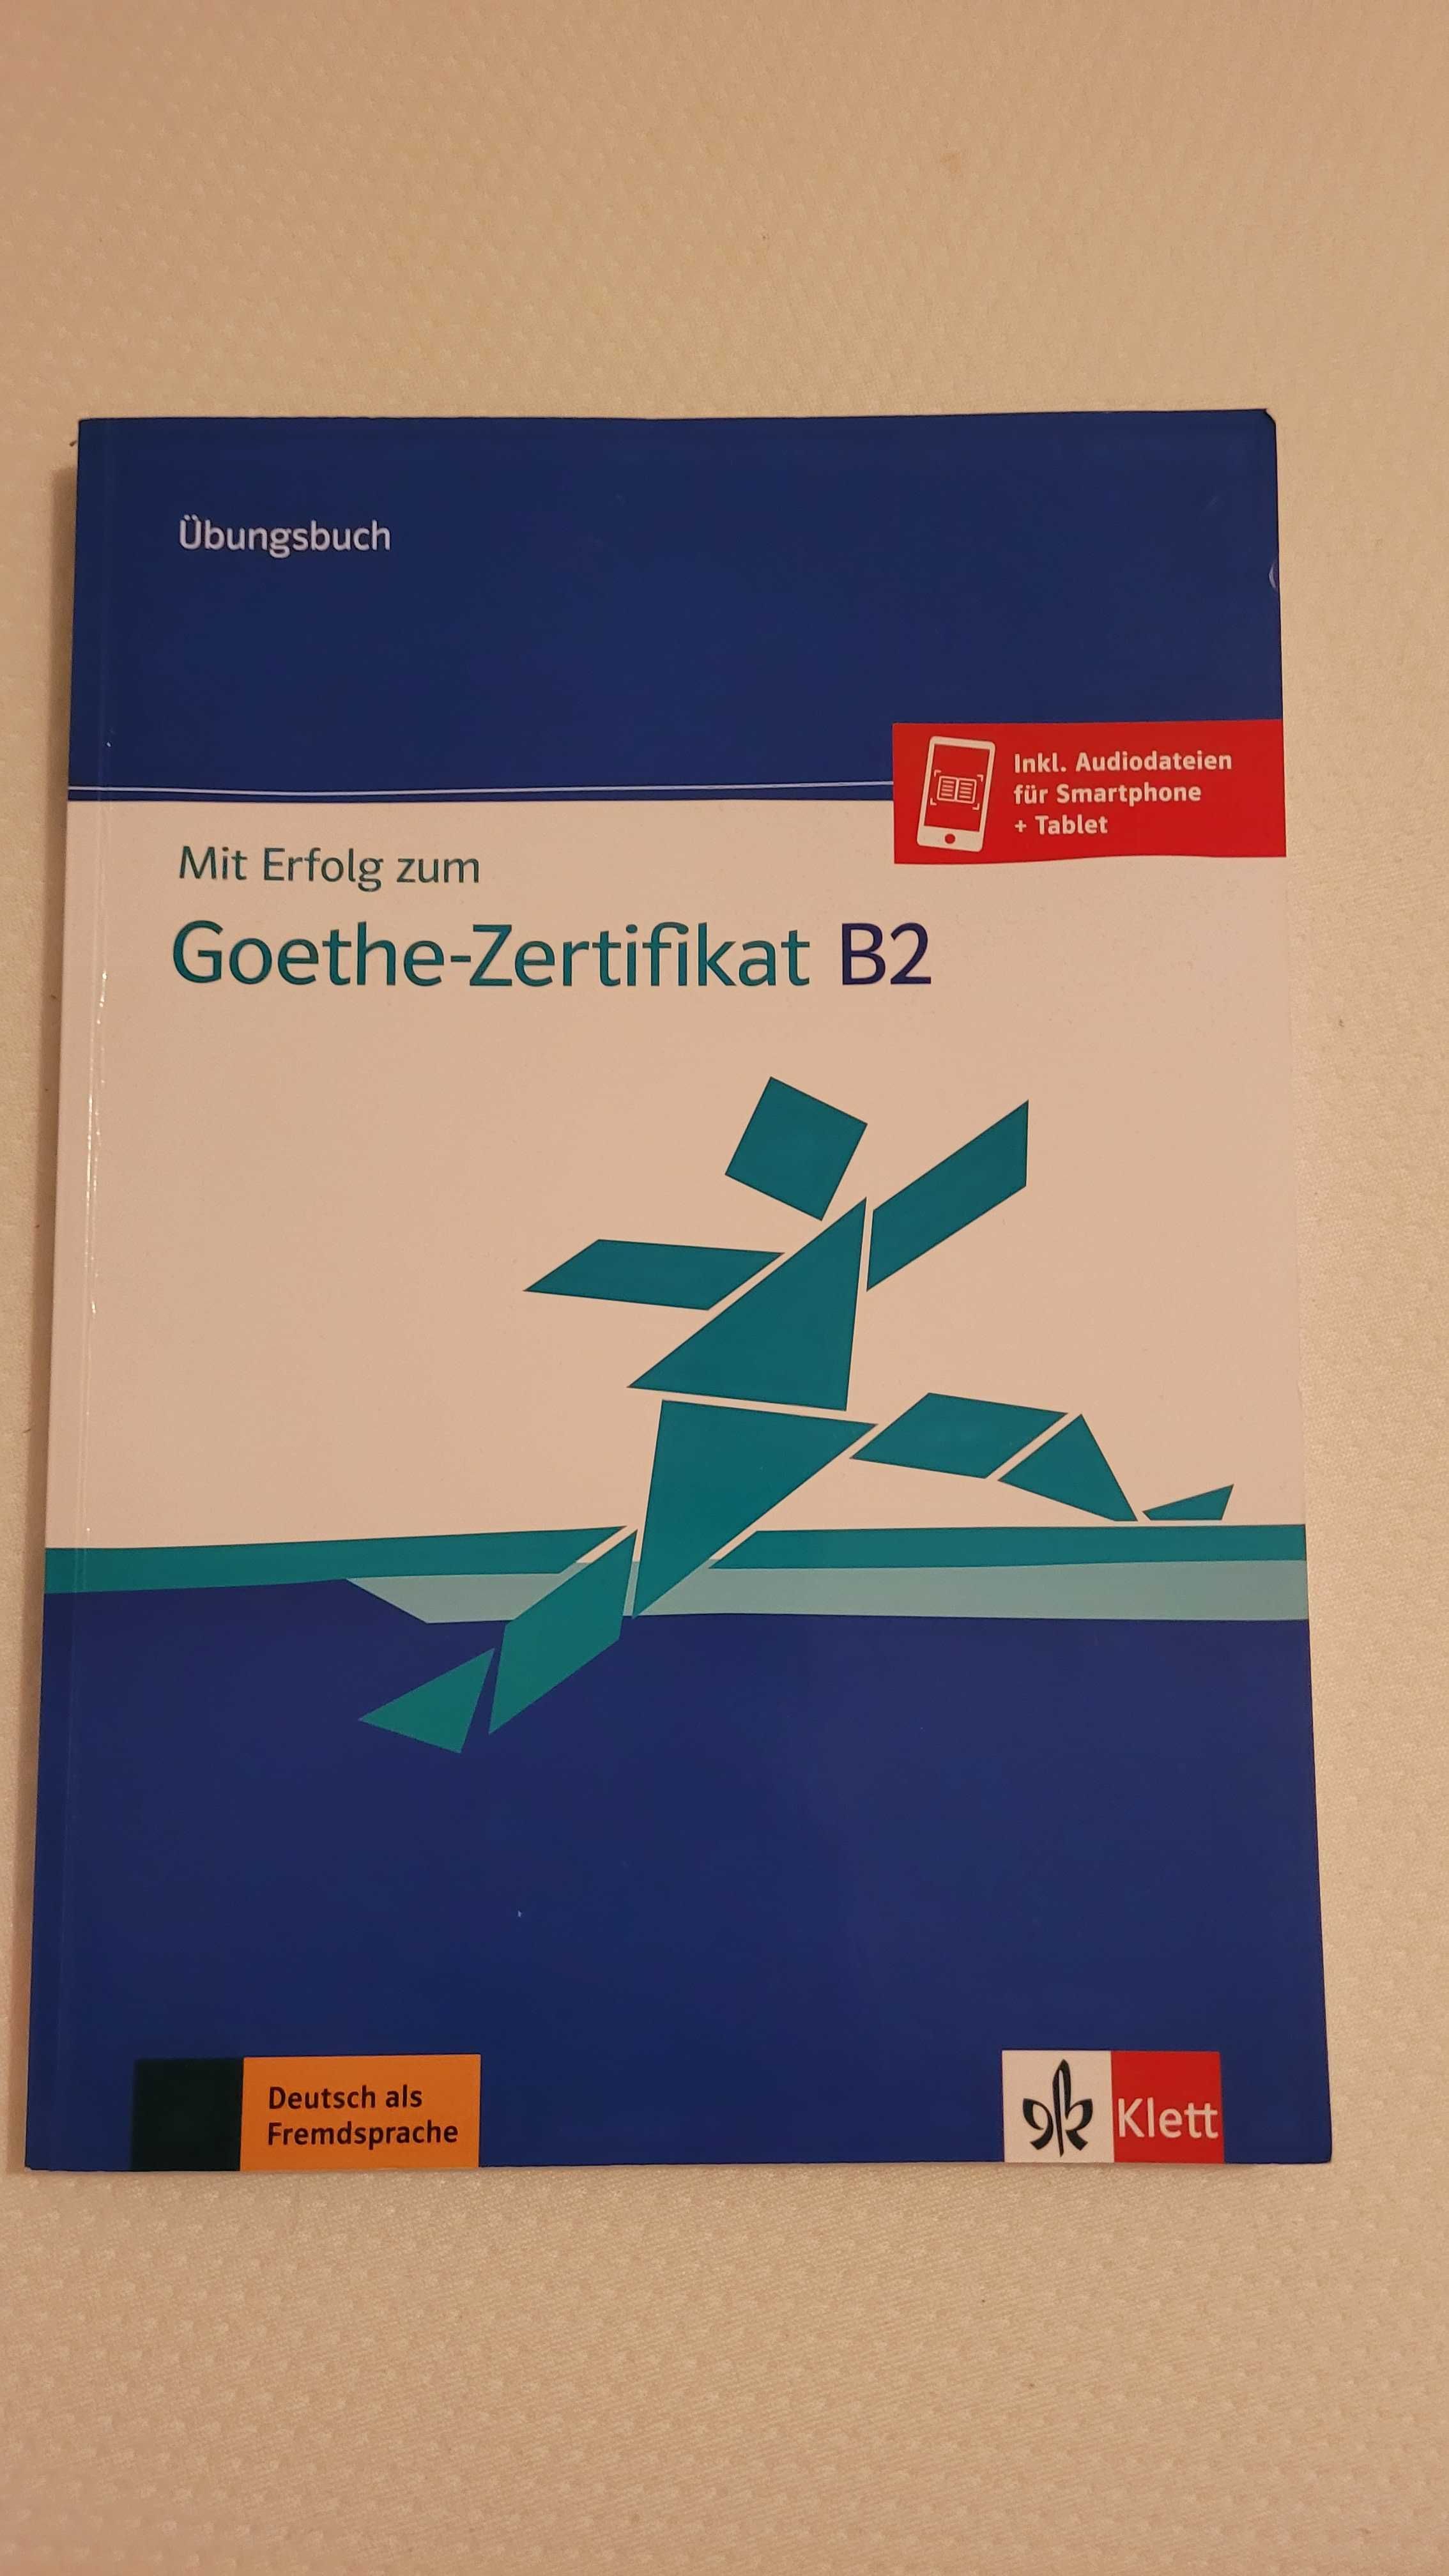 Mit Efolg zum Goethe Zertifikat B2